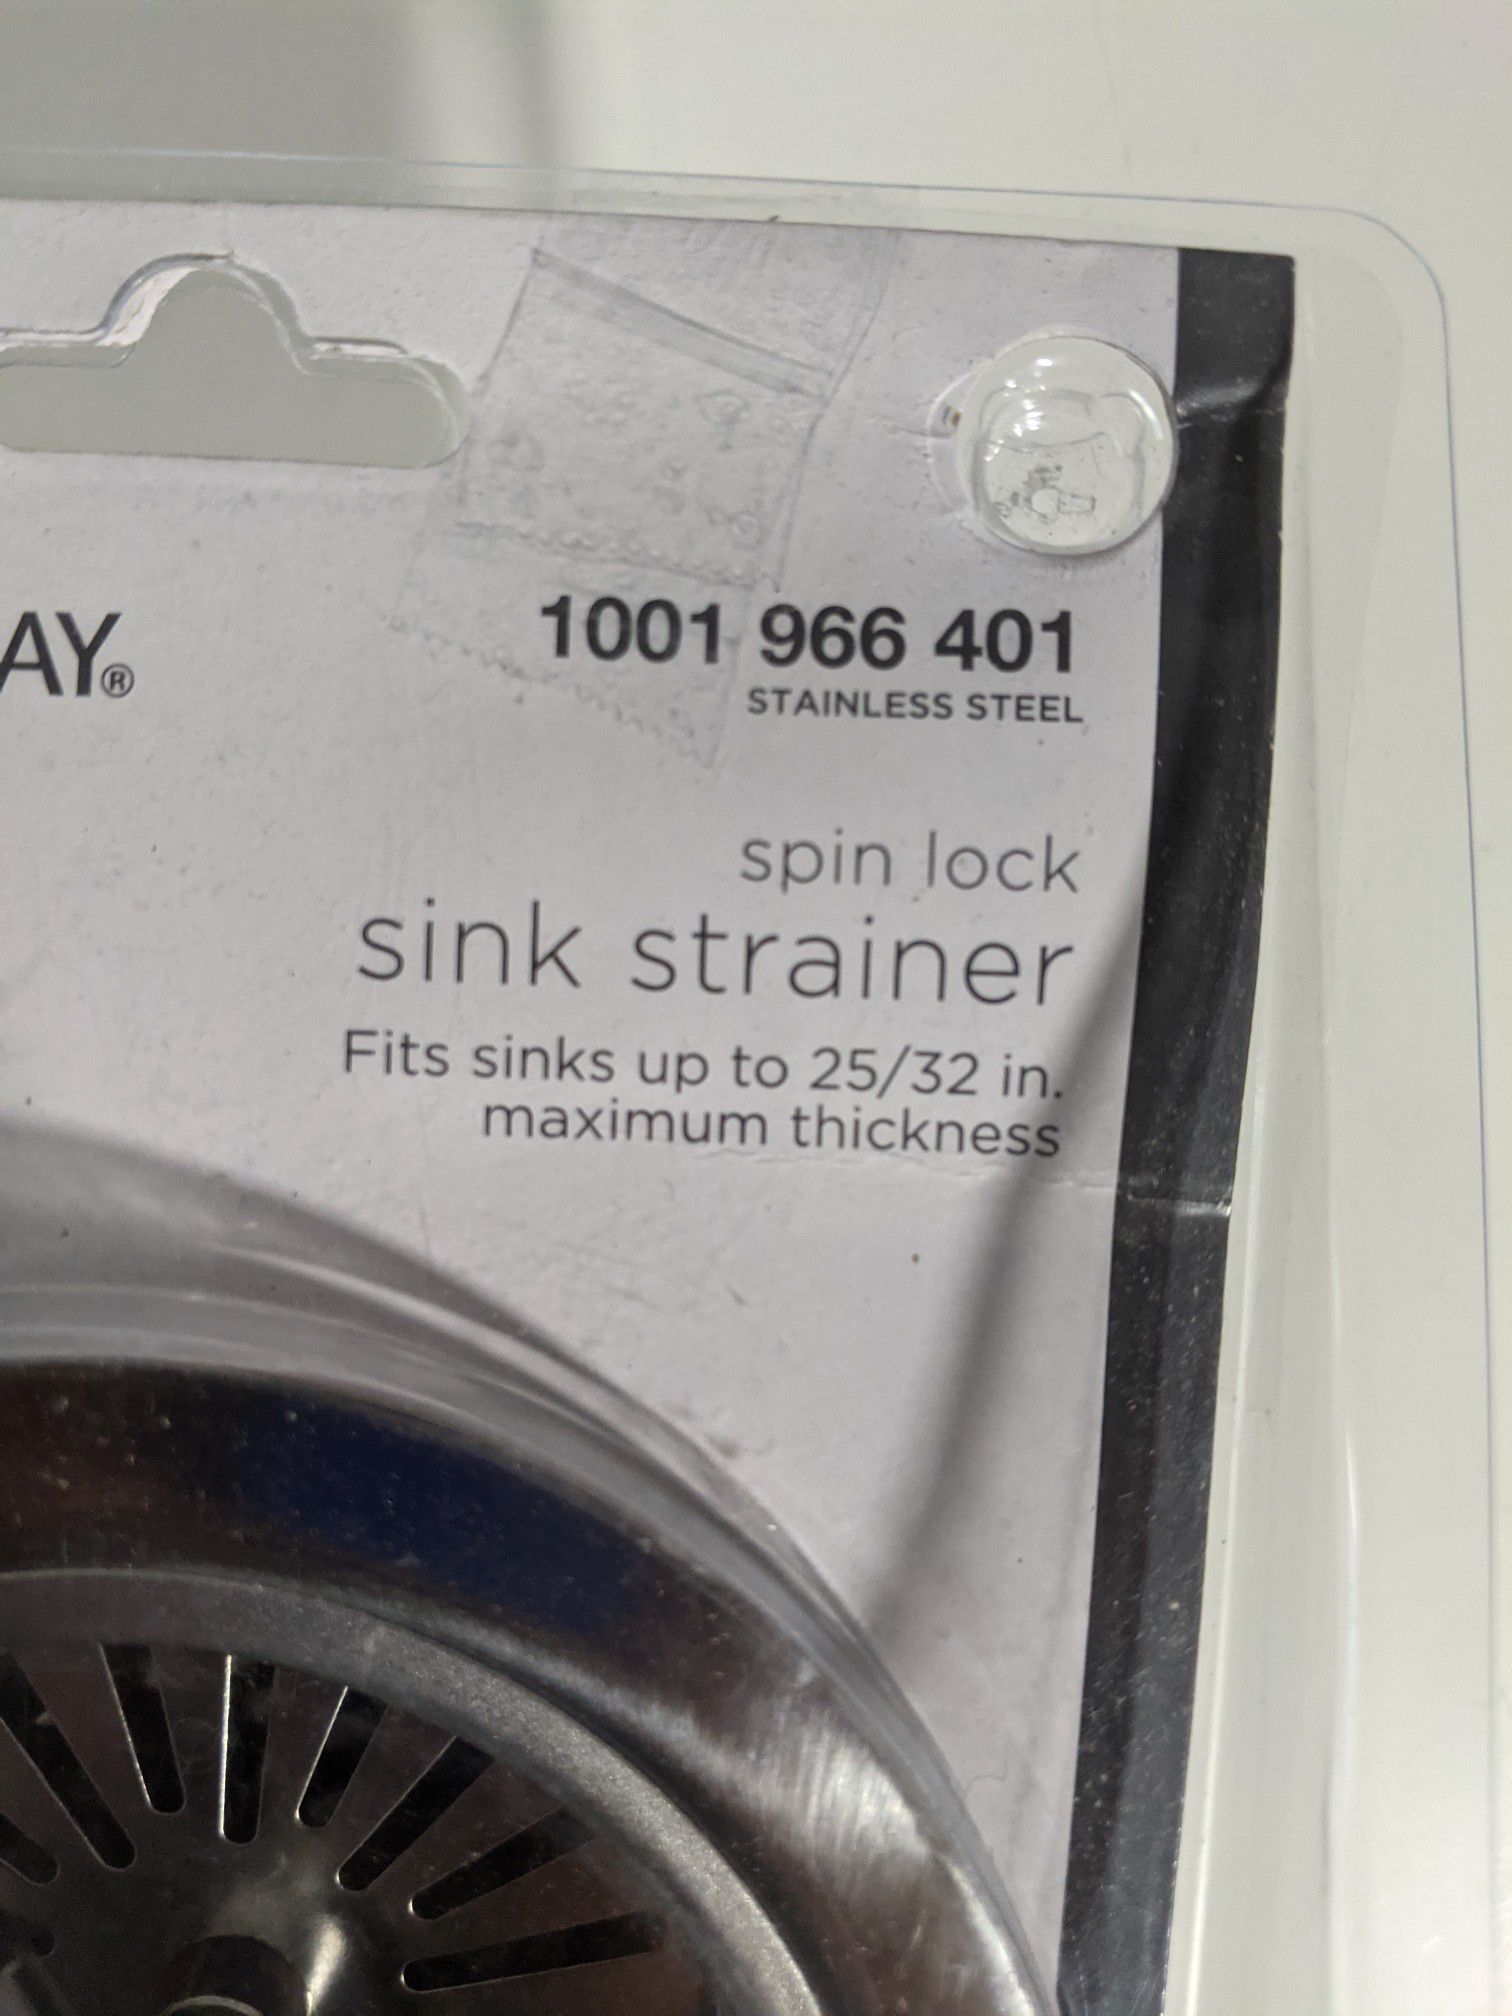 Son lock sink strainer